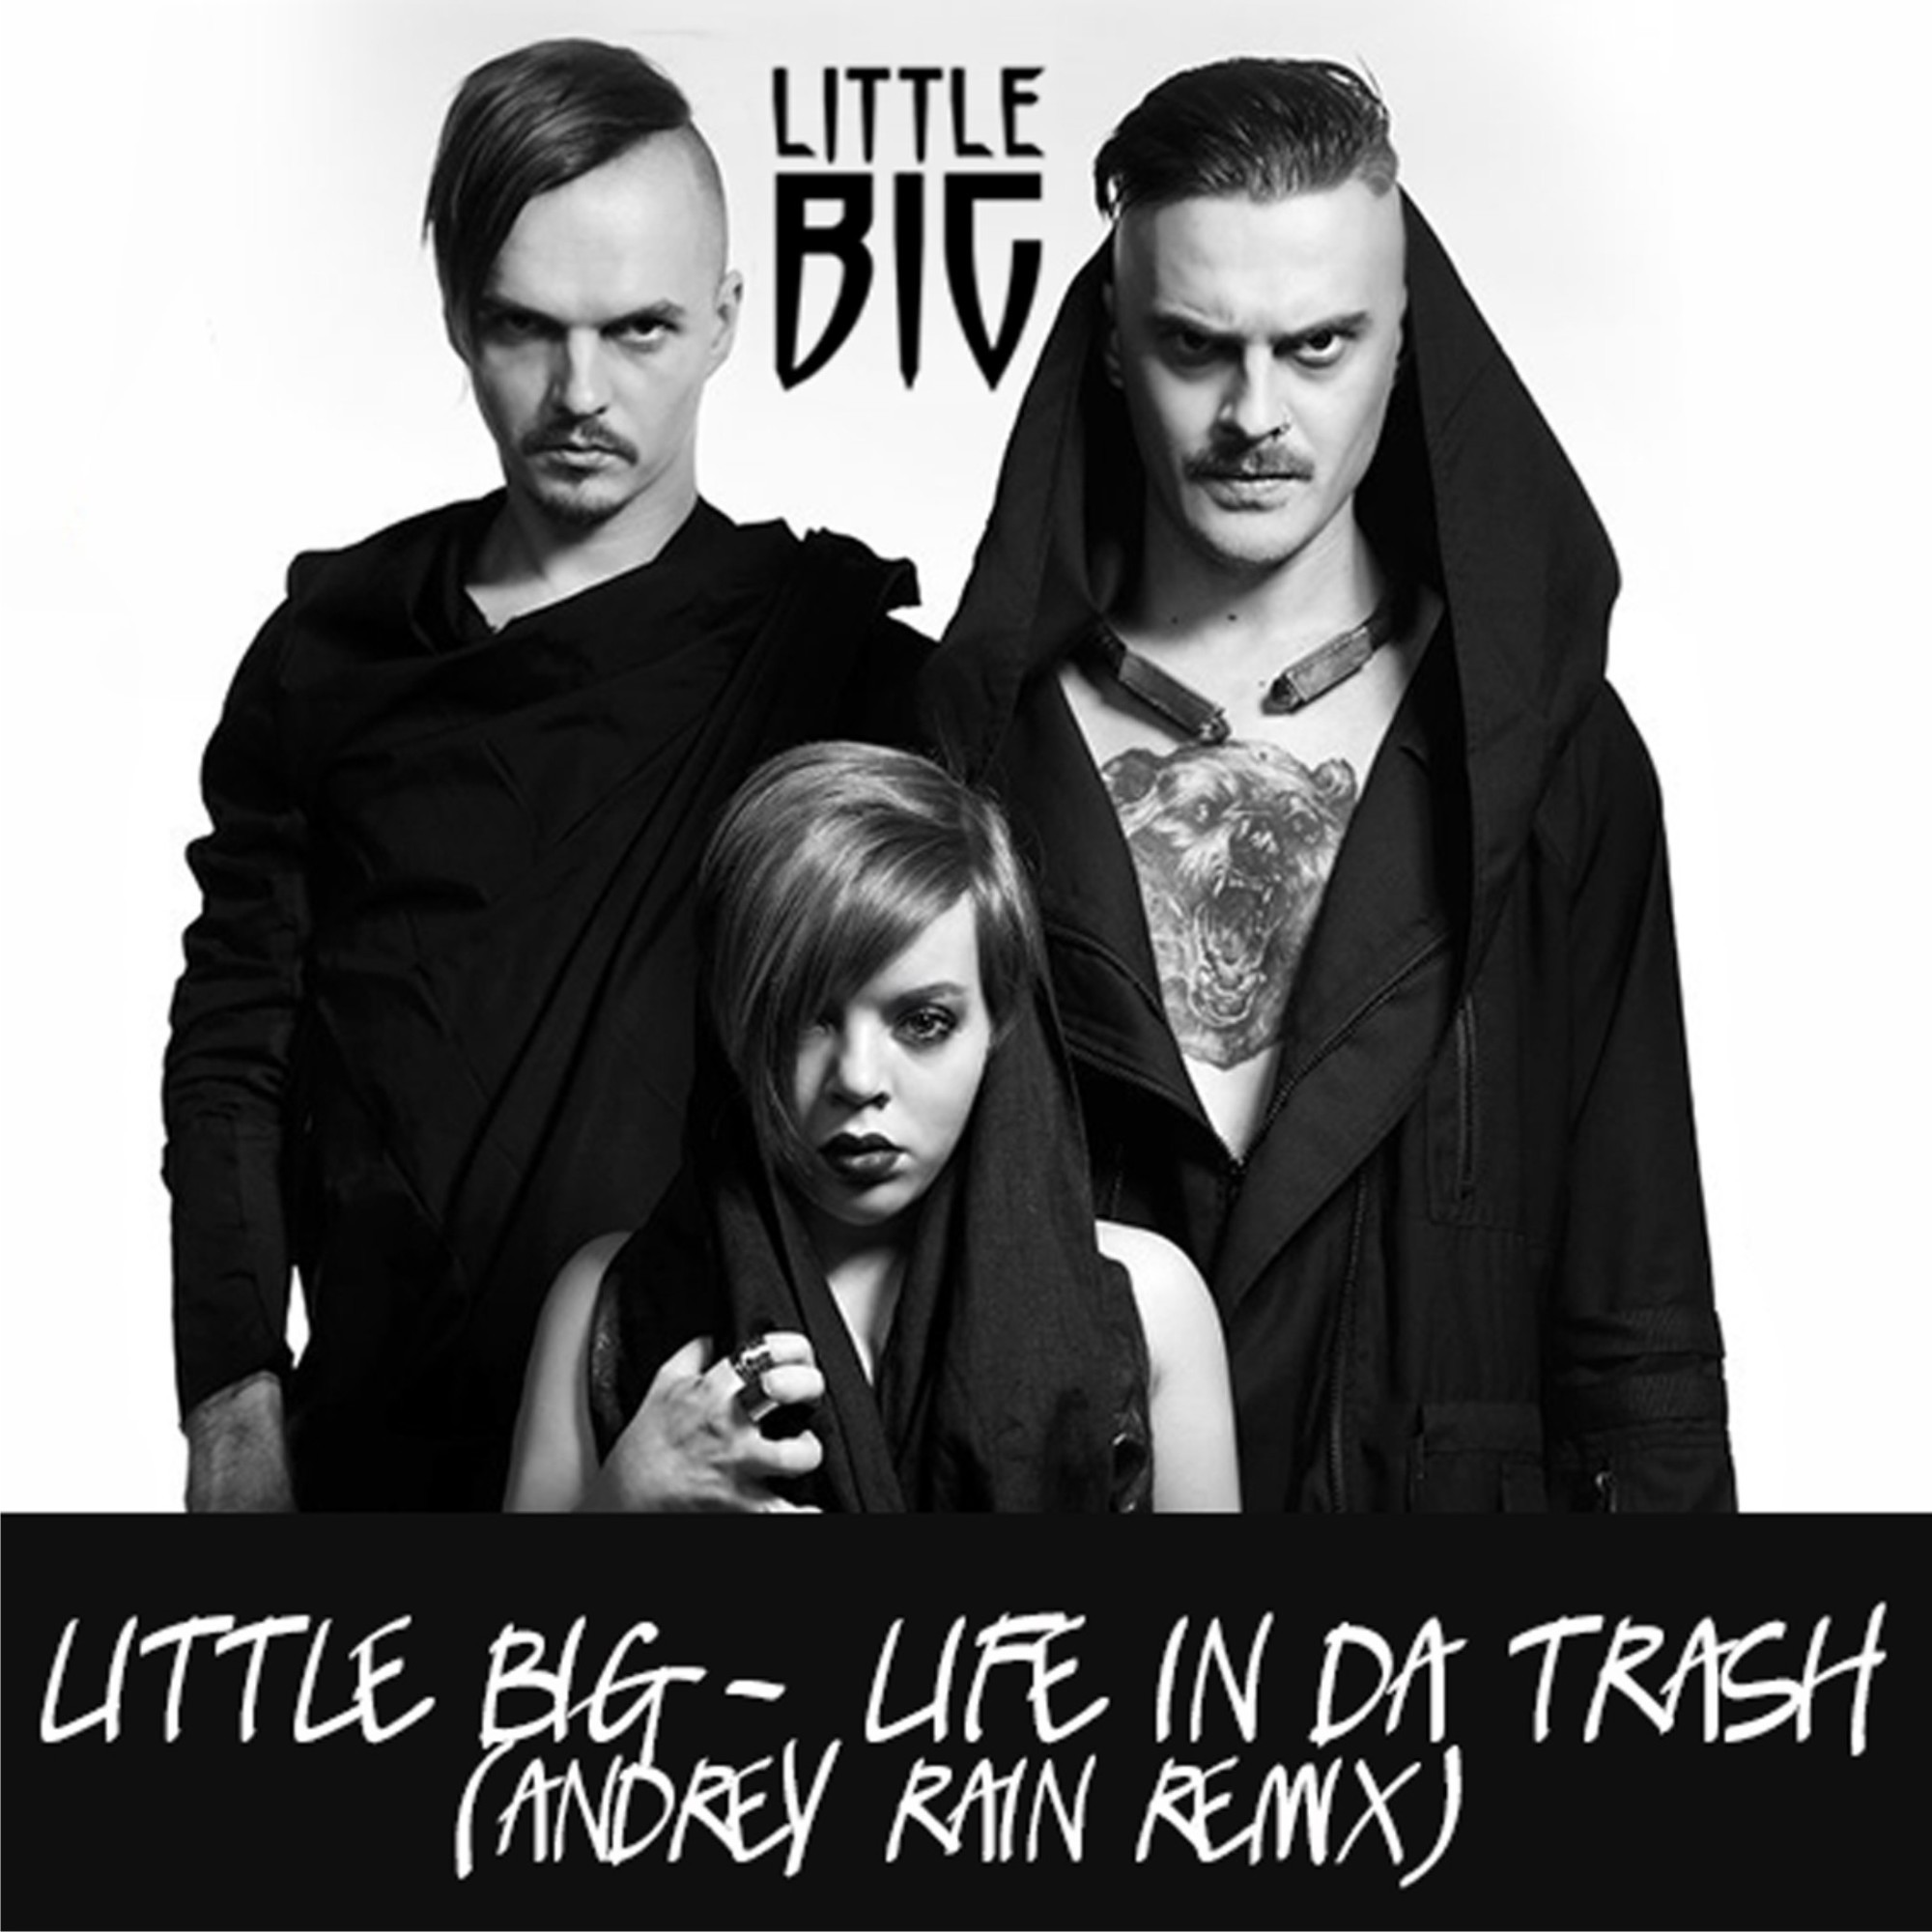 Little big life in da